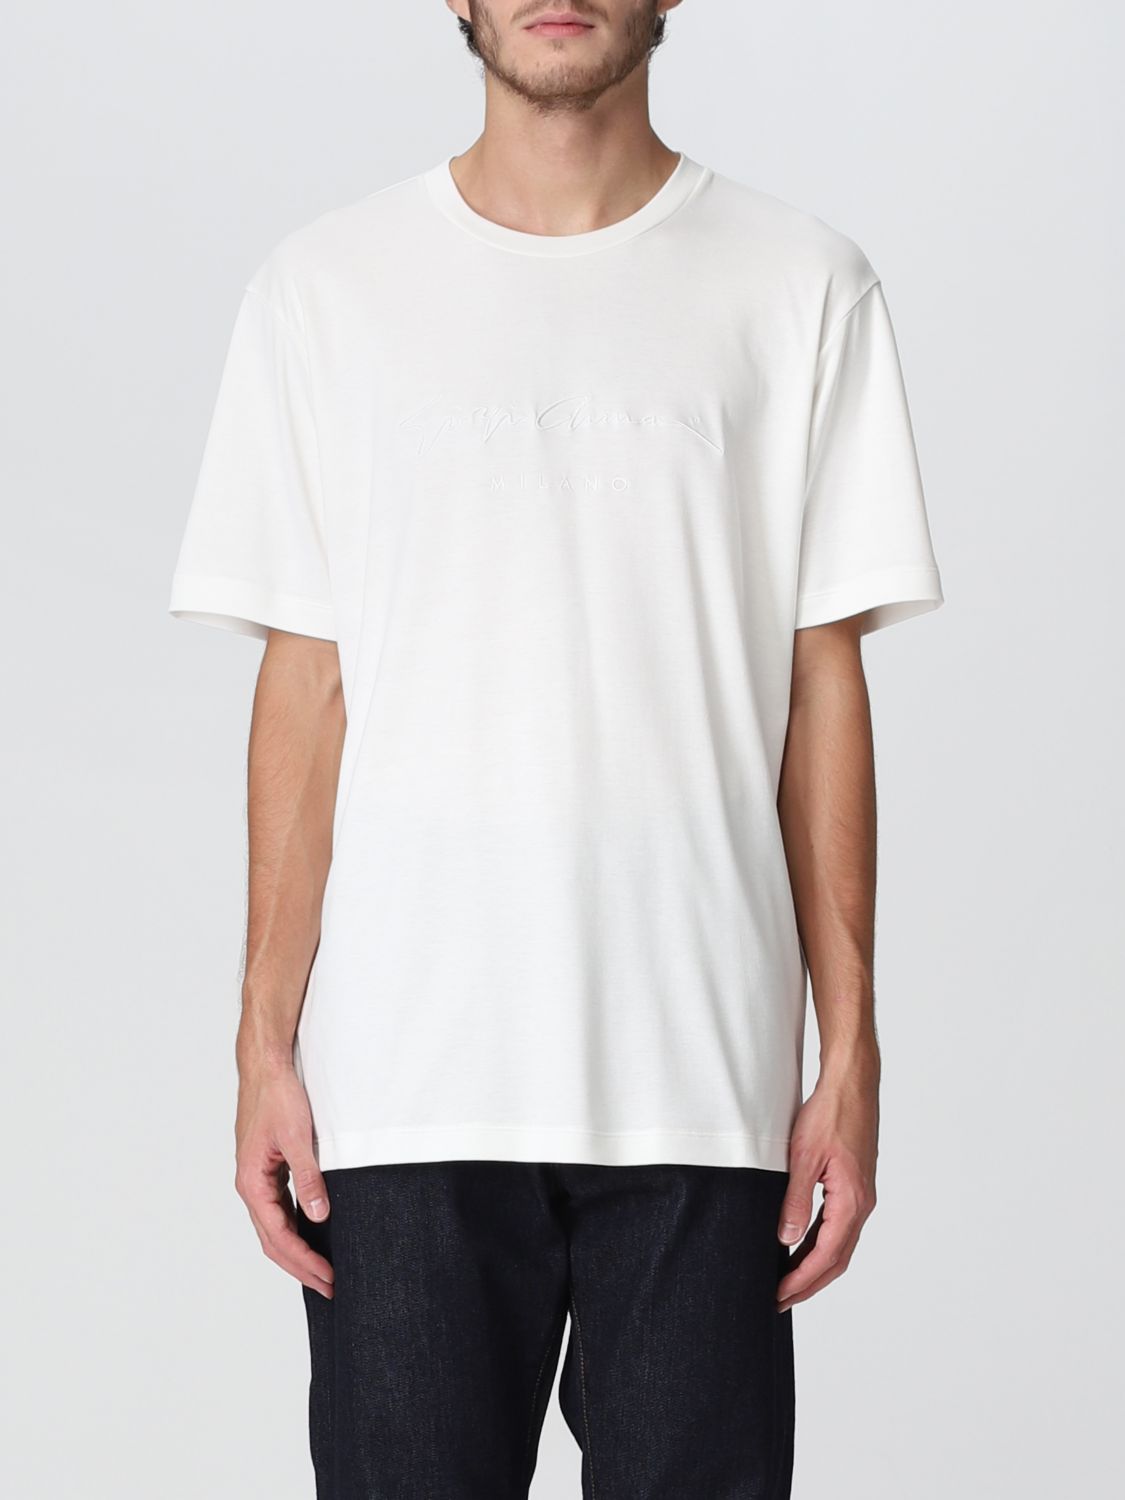 Tシャツ ジョルジオ アルマーニ: Tシャツ Giorgio Armani メンズ ホワイト 1